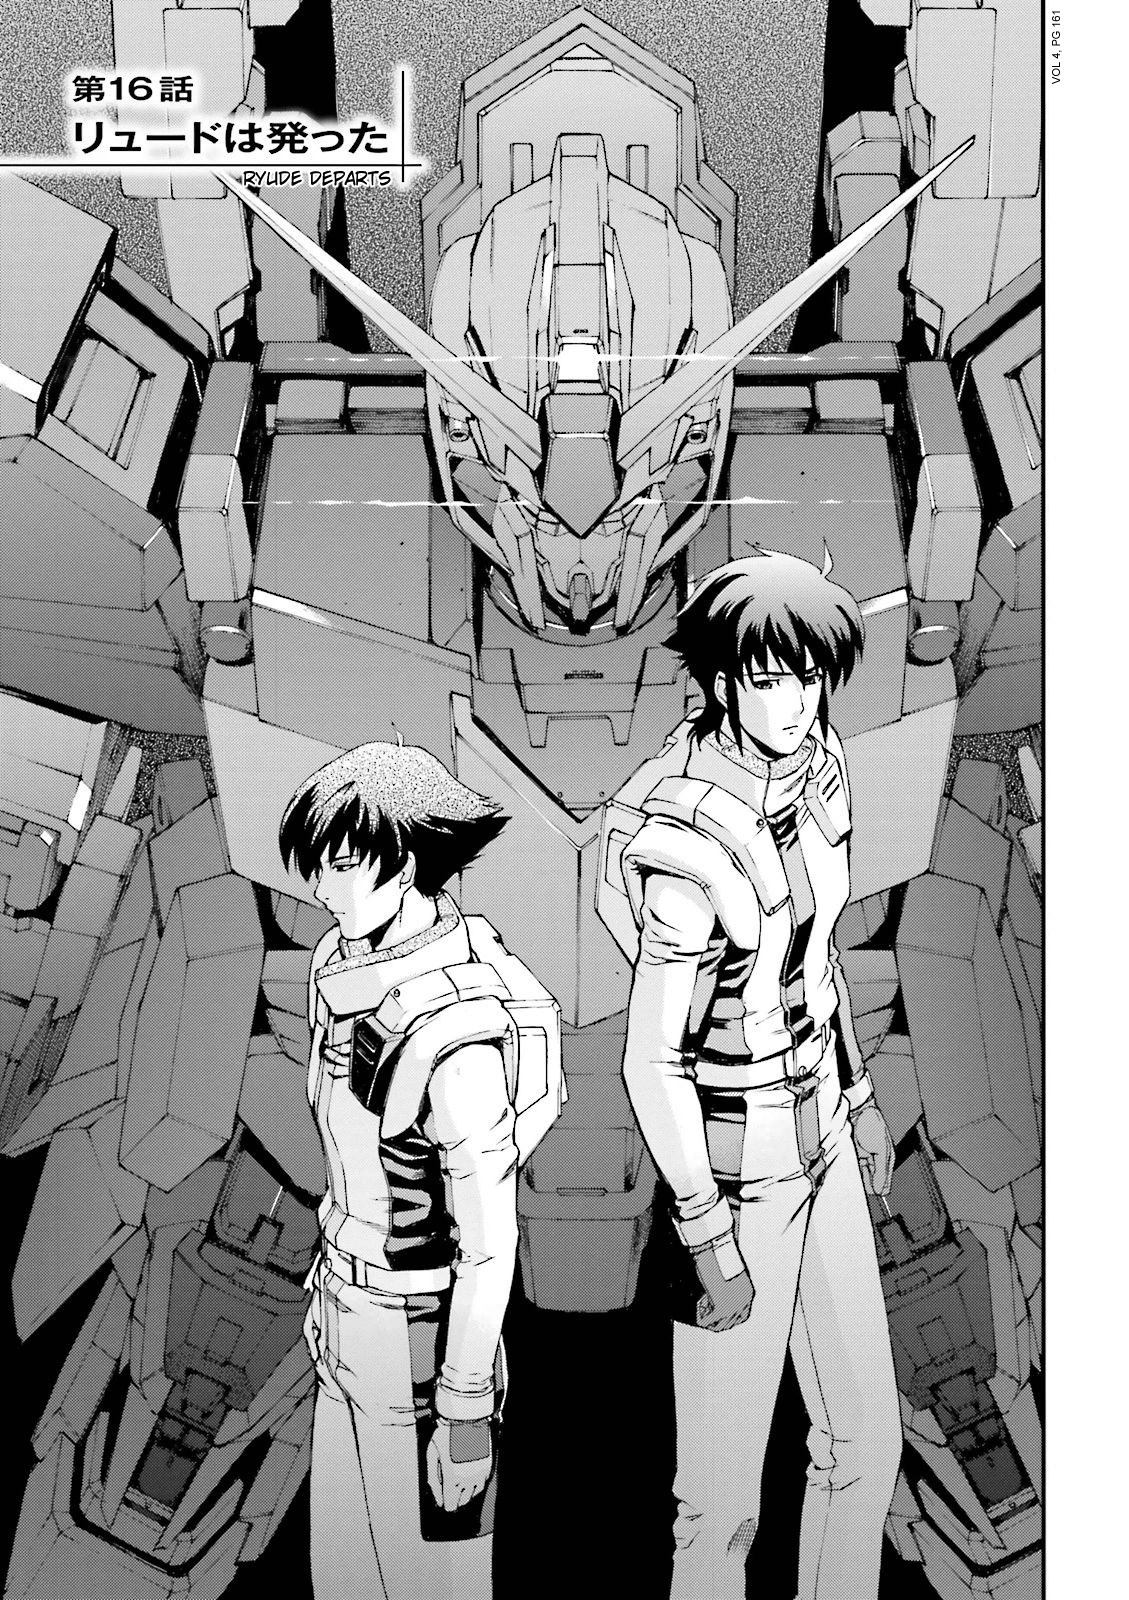 Kidou Senshi Gundam U.c. 0094 - Across The Sky Vol.4 Chapter 16: Ryude Departs - Picture 1